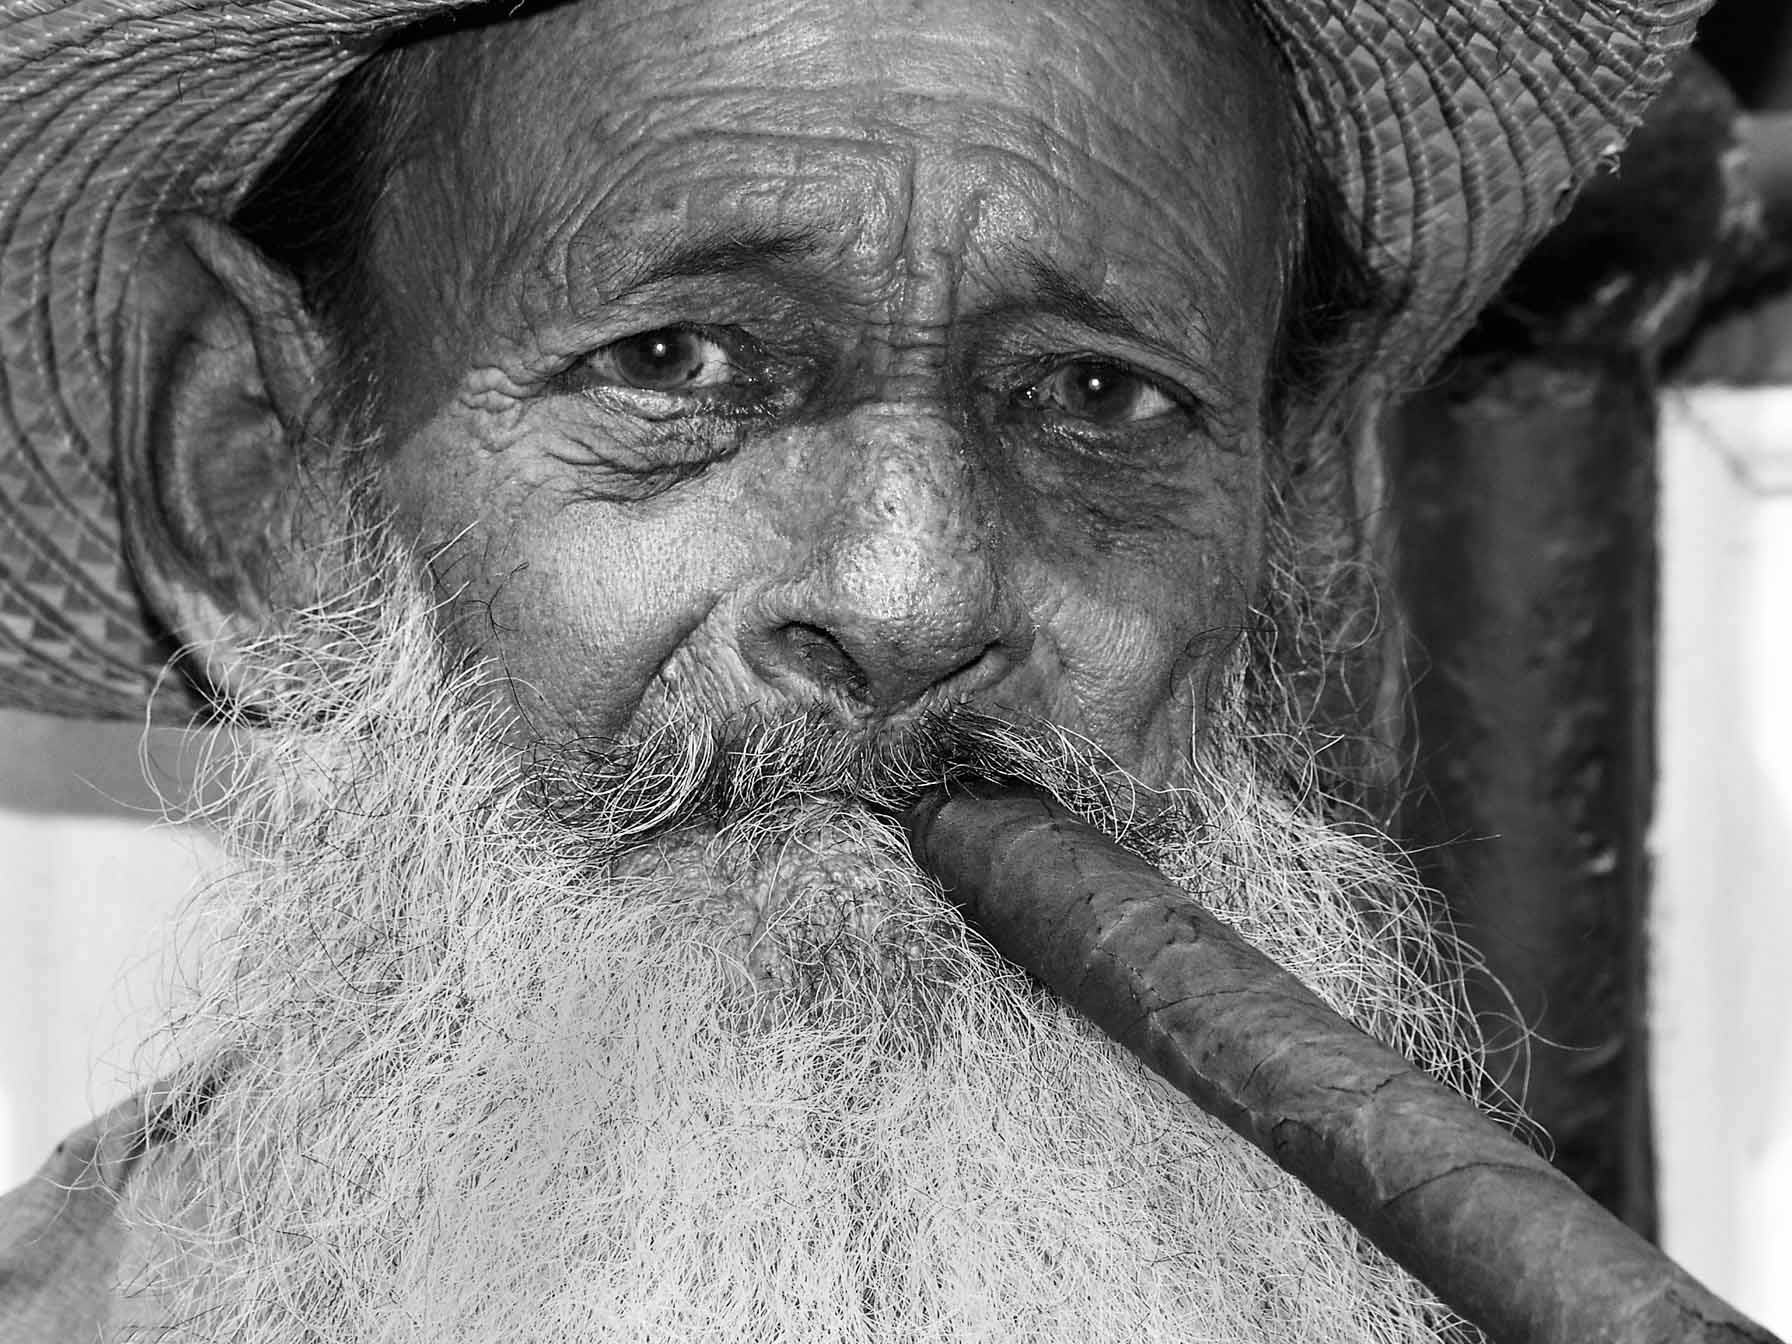 Taste the cigar, Cuba